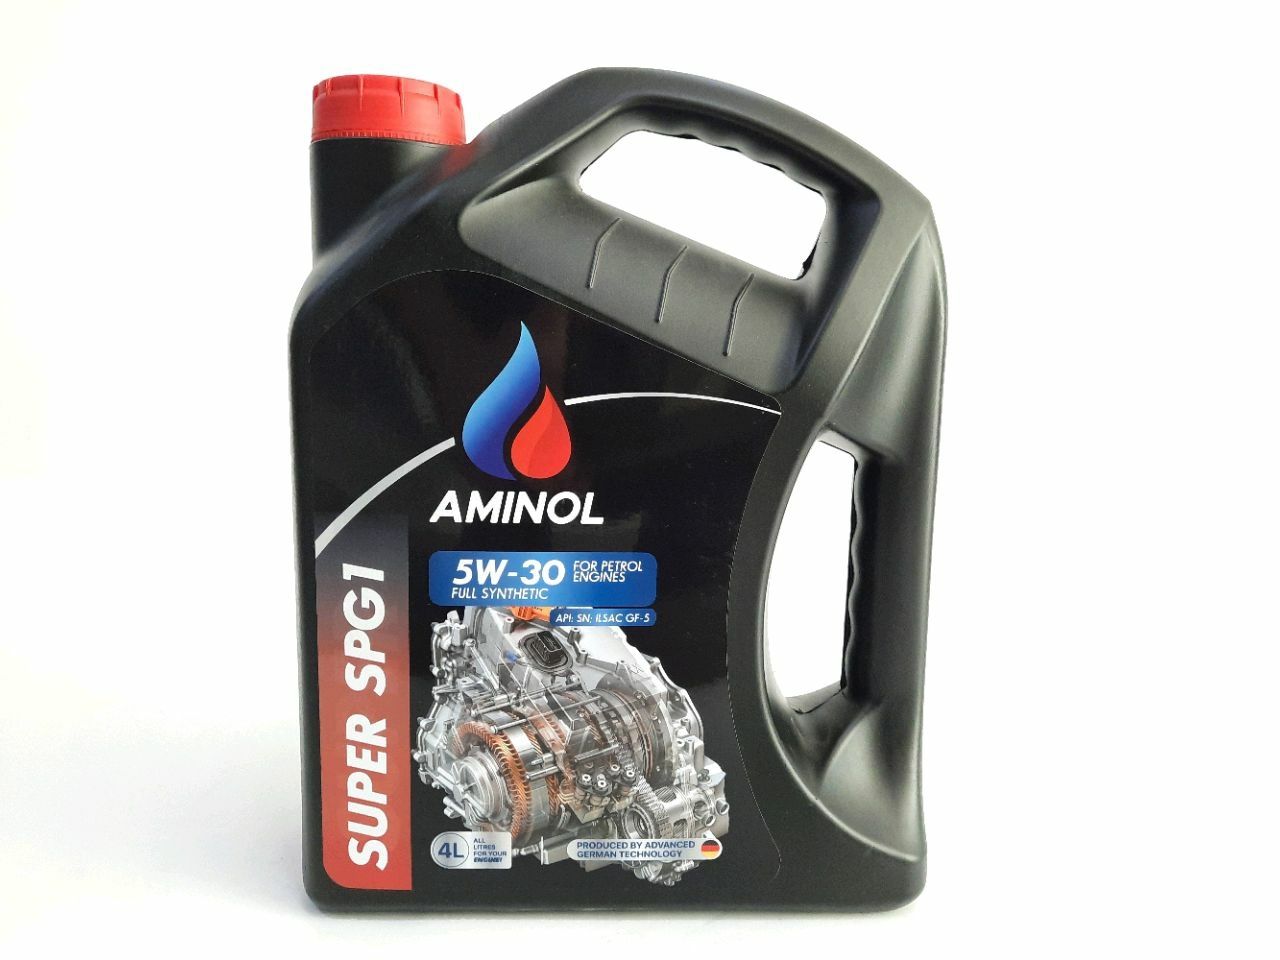 251668)Aminol SUPER SPG1 5w-30 (SN/CF) 4L. (30-3-5/30/4) – cumpară 